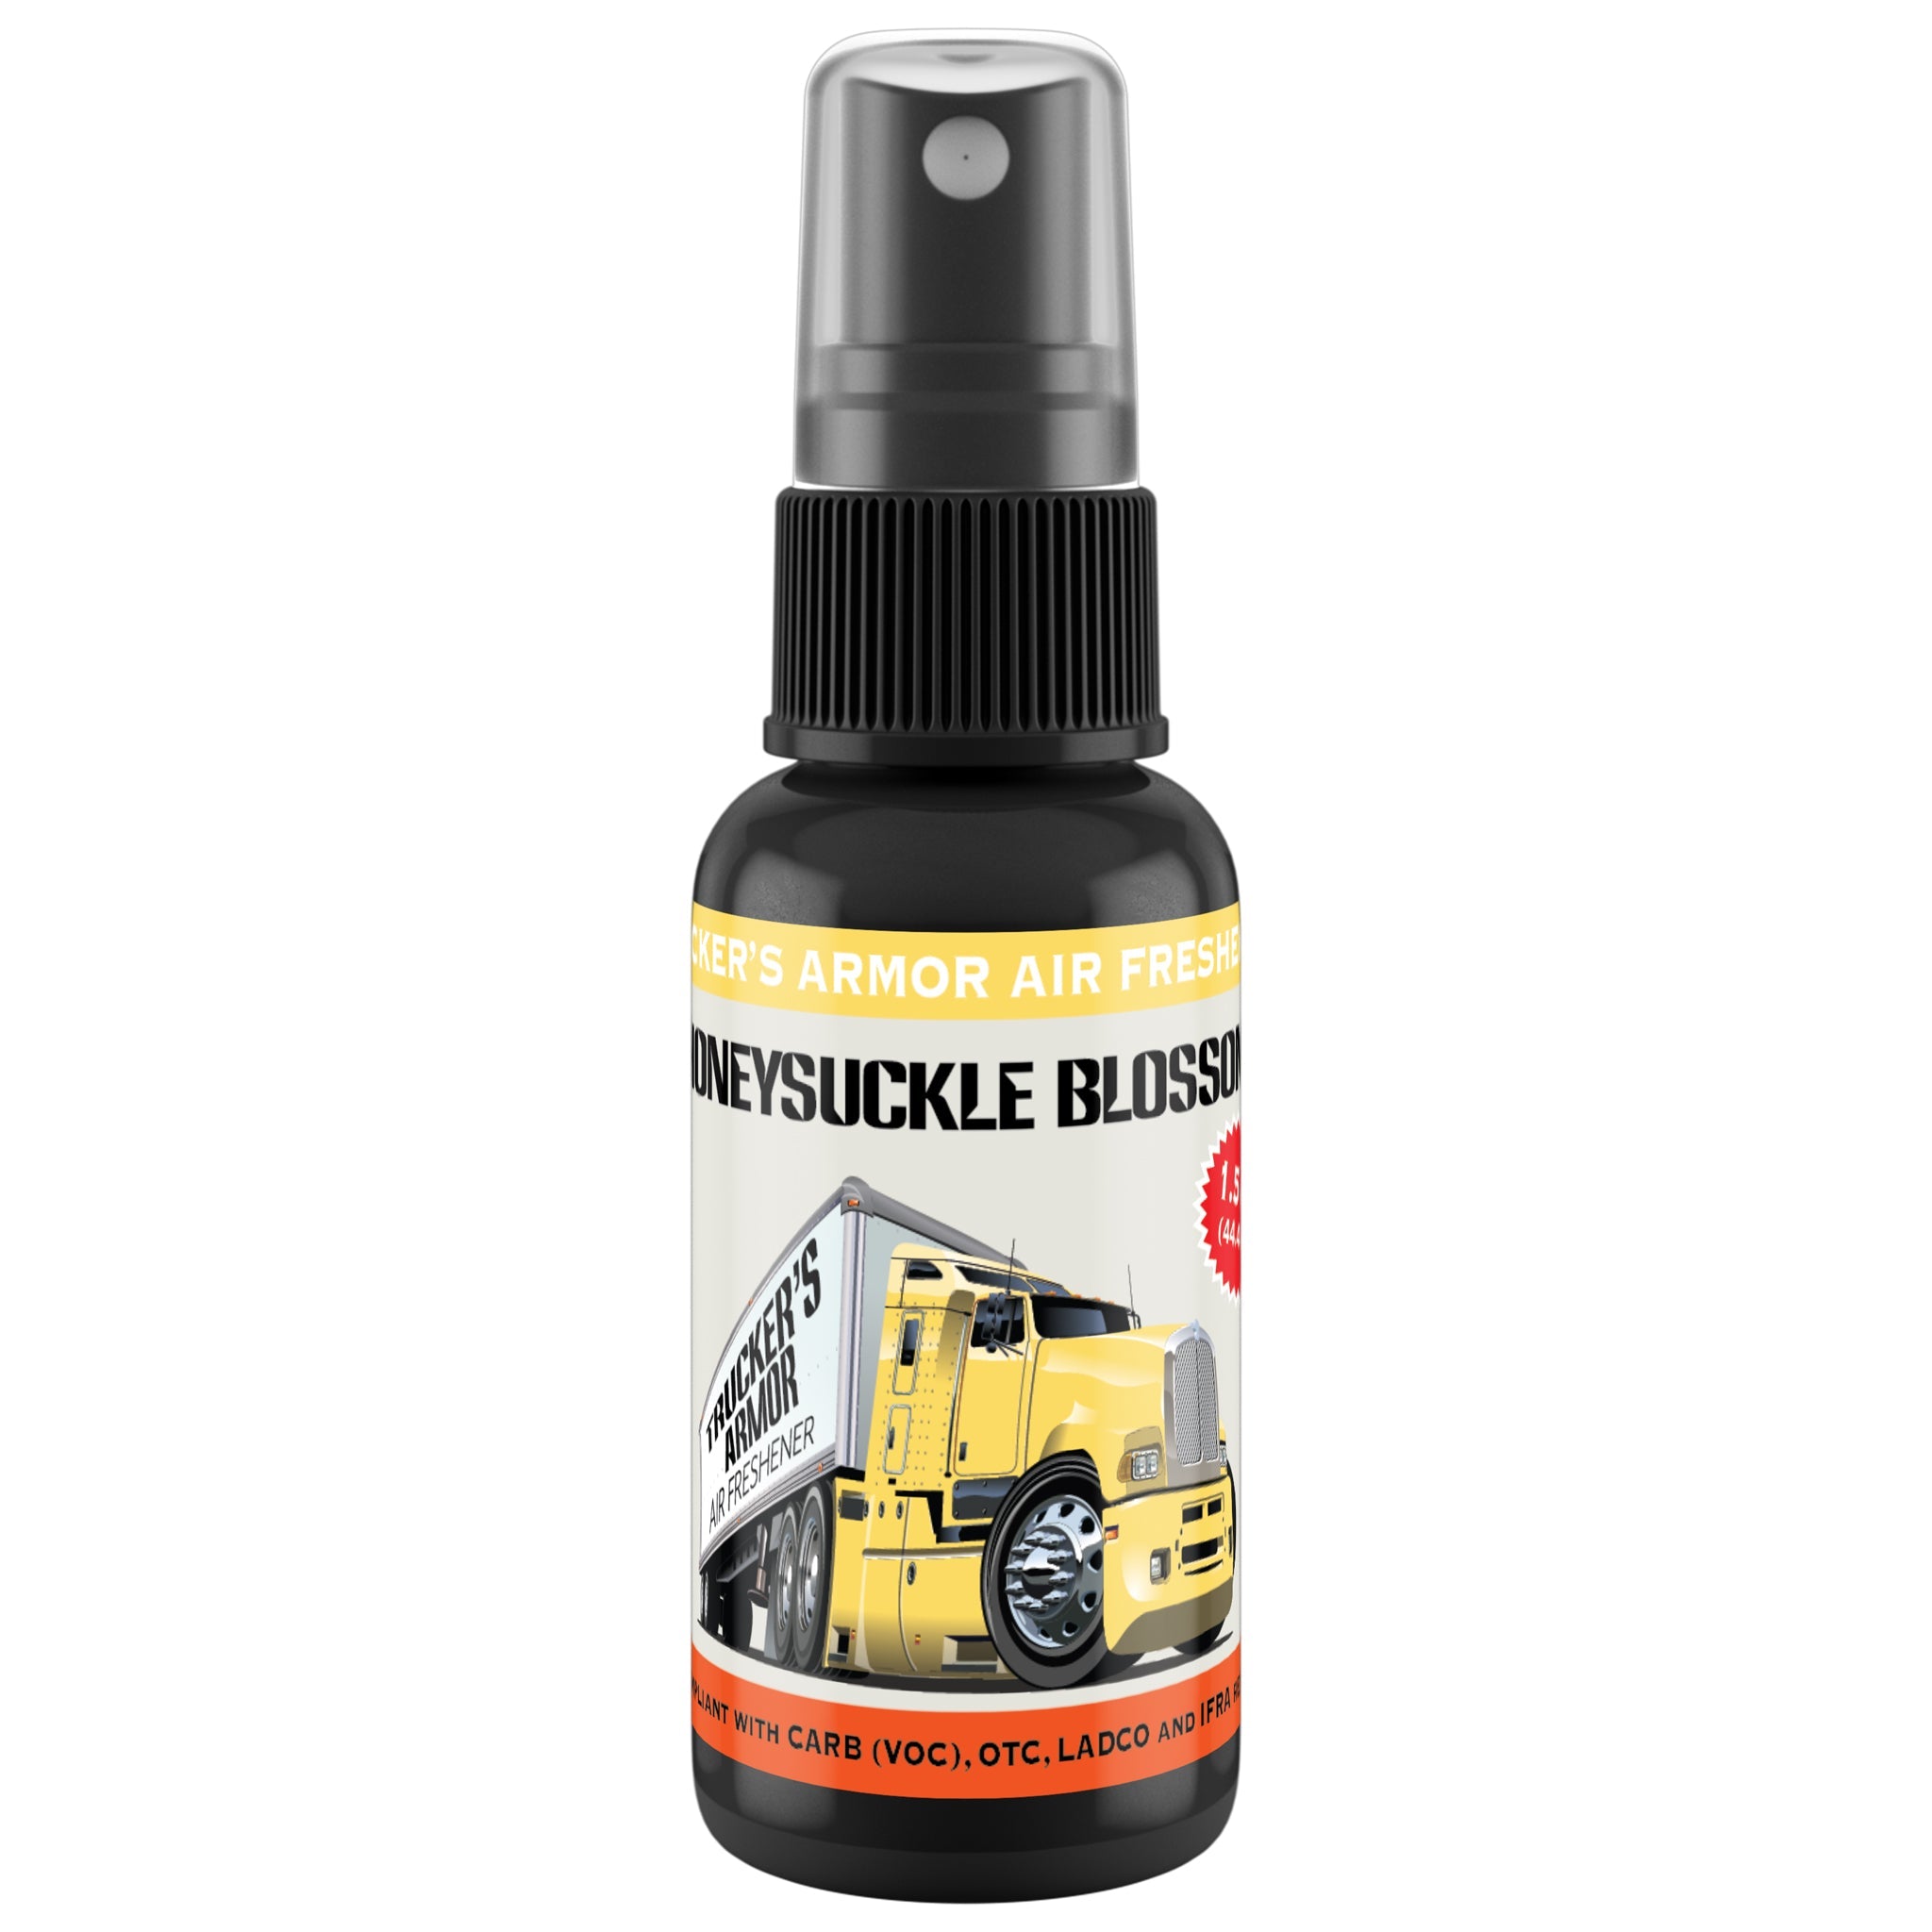 Trucker's Armor Air Freshener - Honeysuckle Blossom Scent